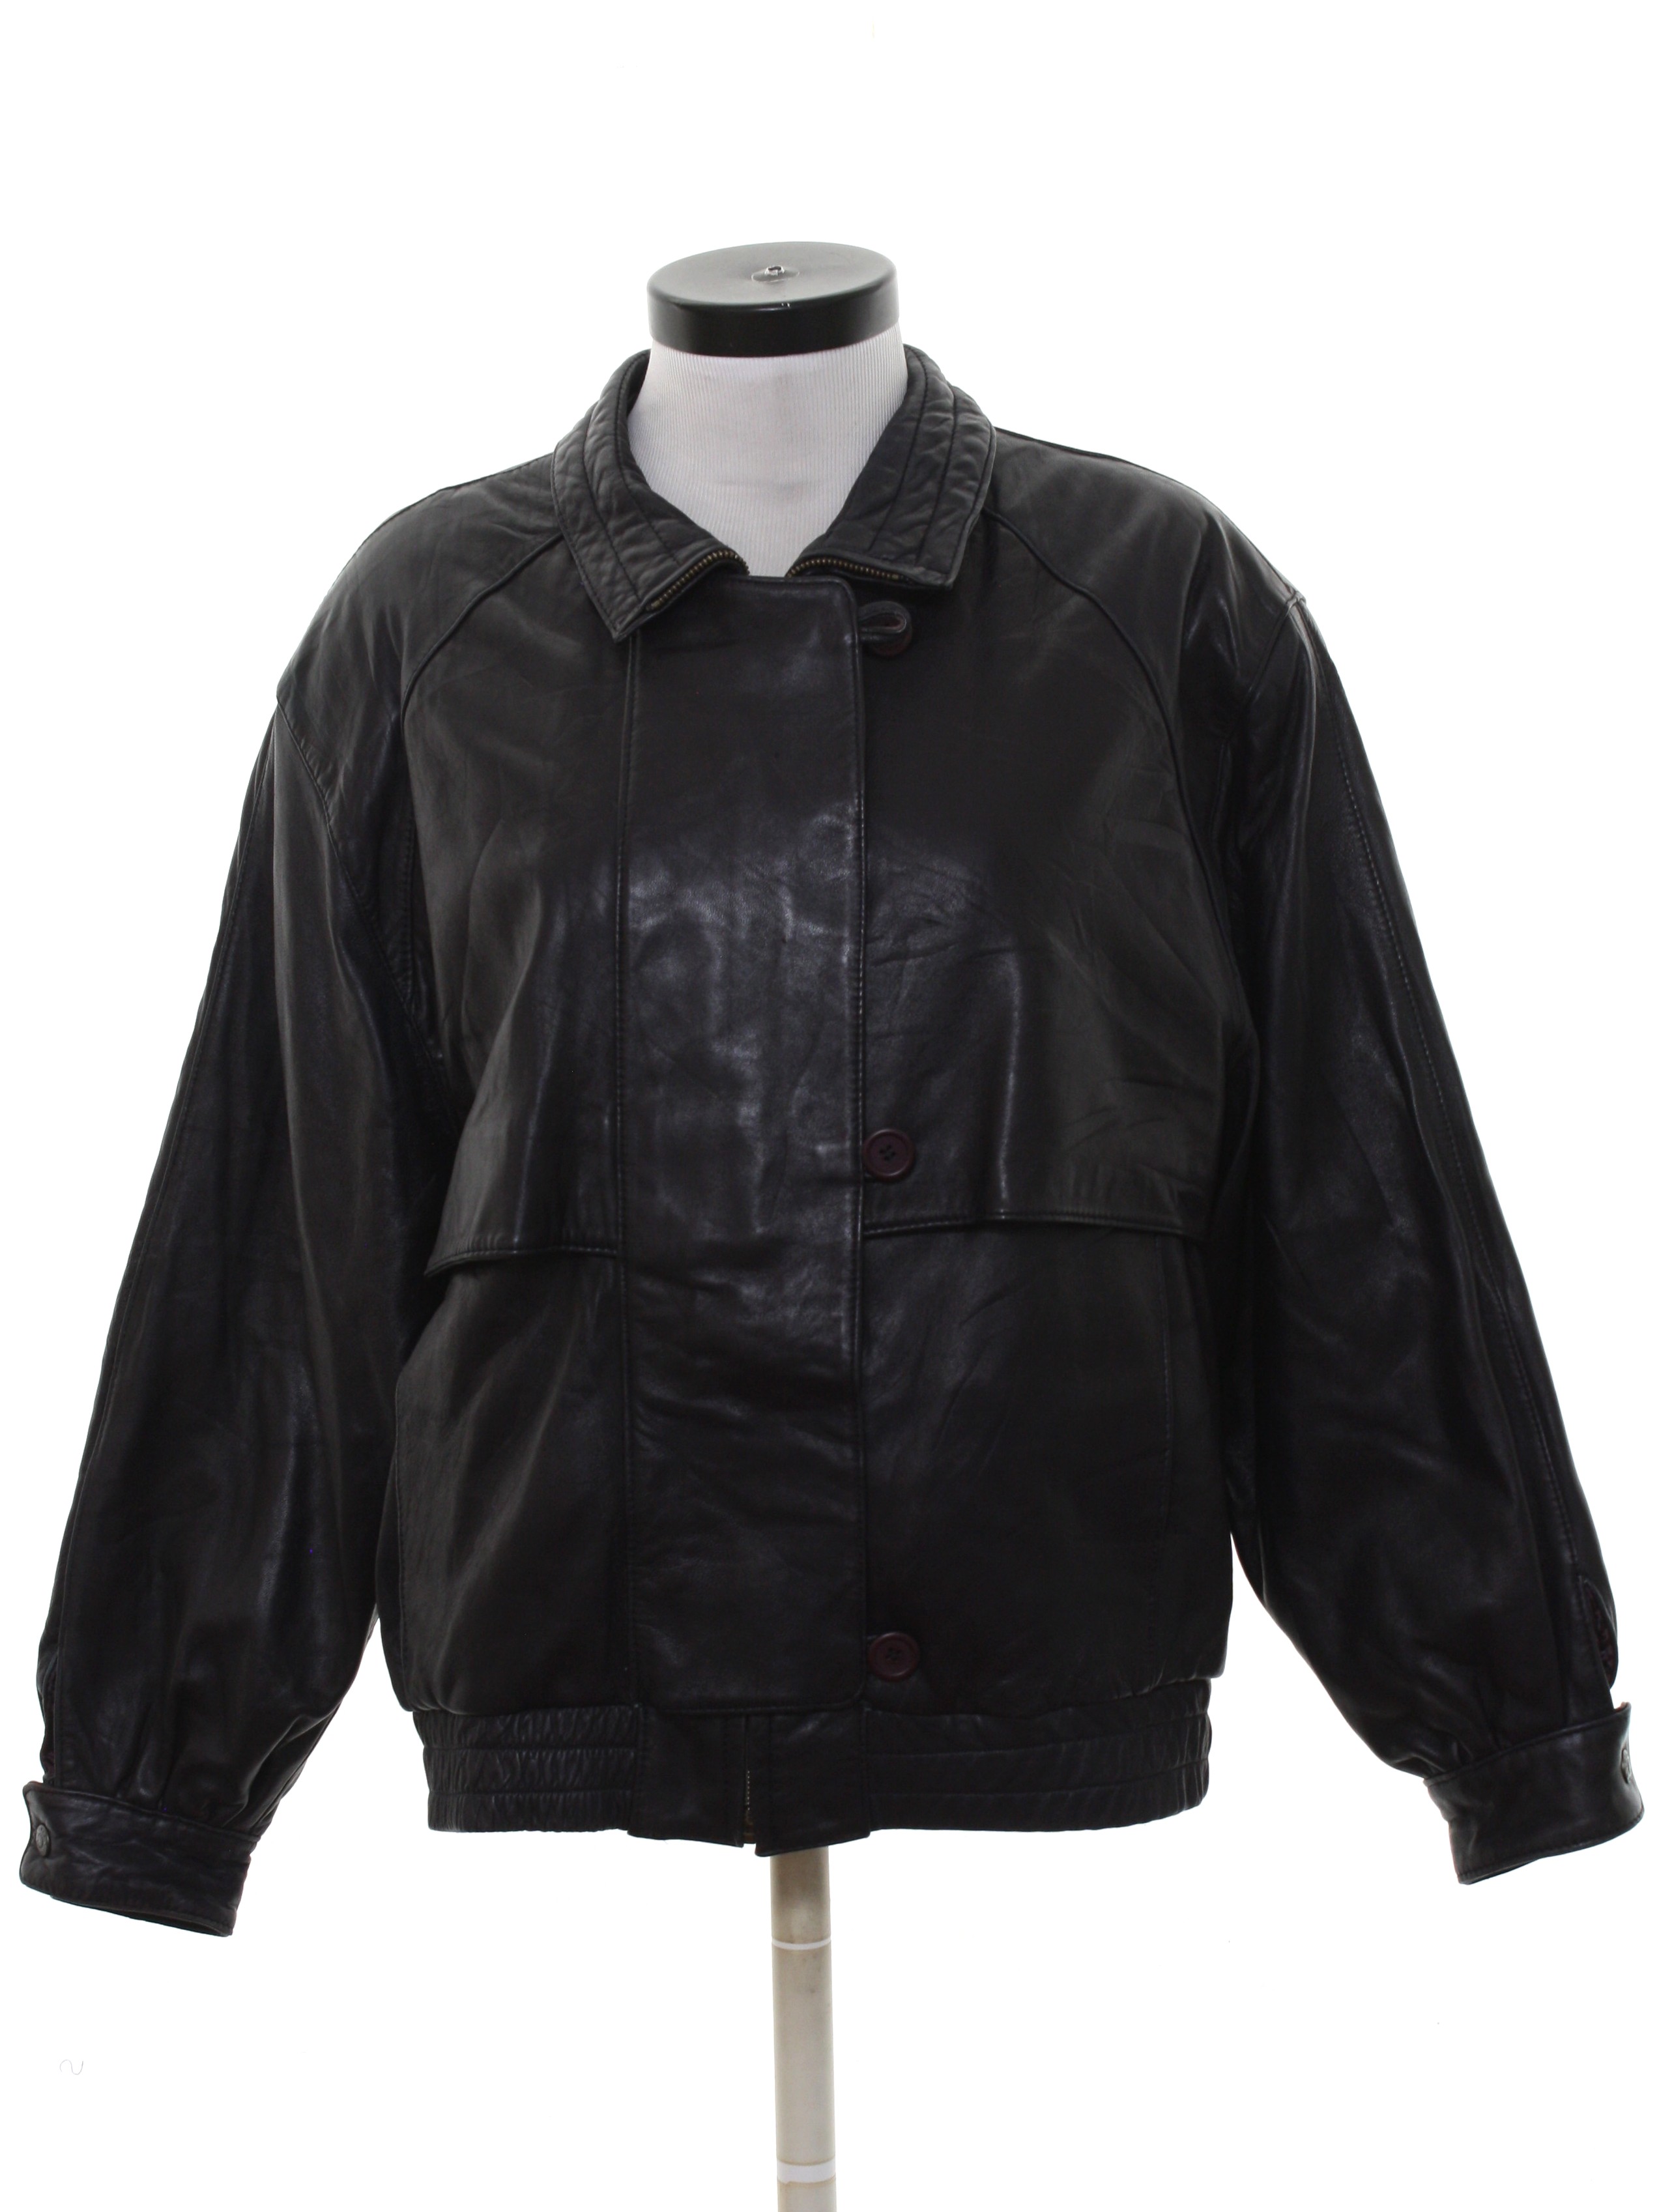 Retro Eighties Leather Jacket: 80s -Luis Alvear- Womens dark purplish